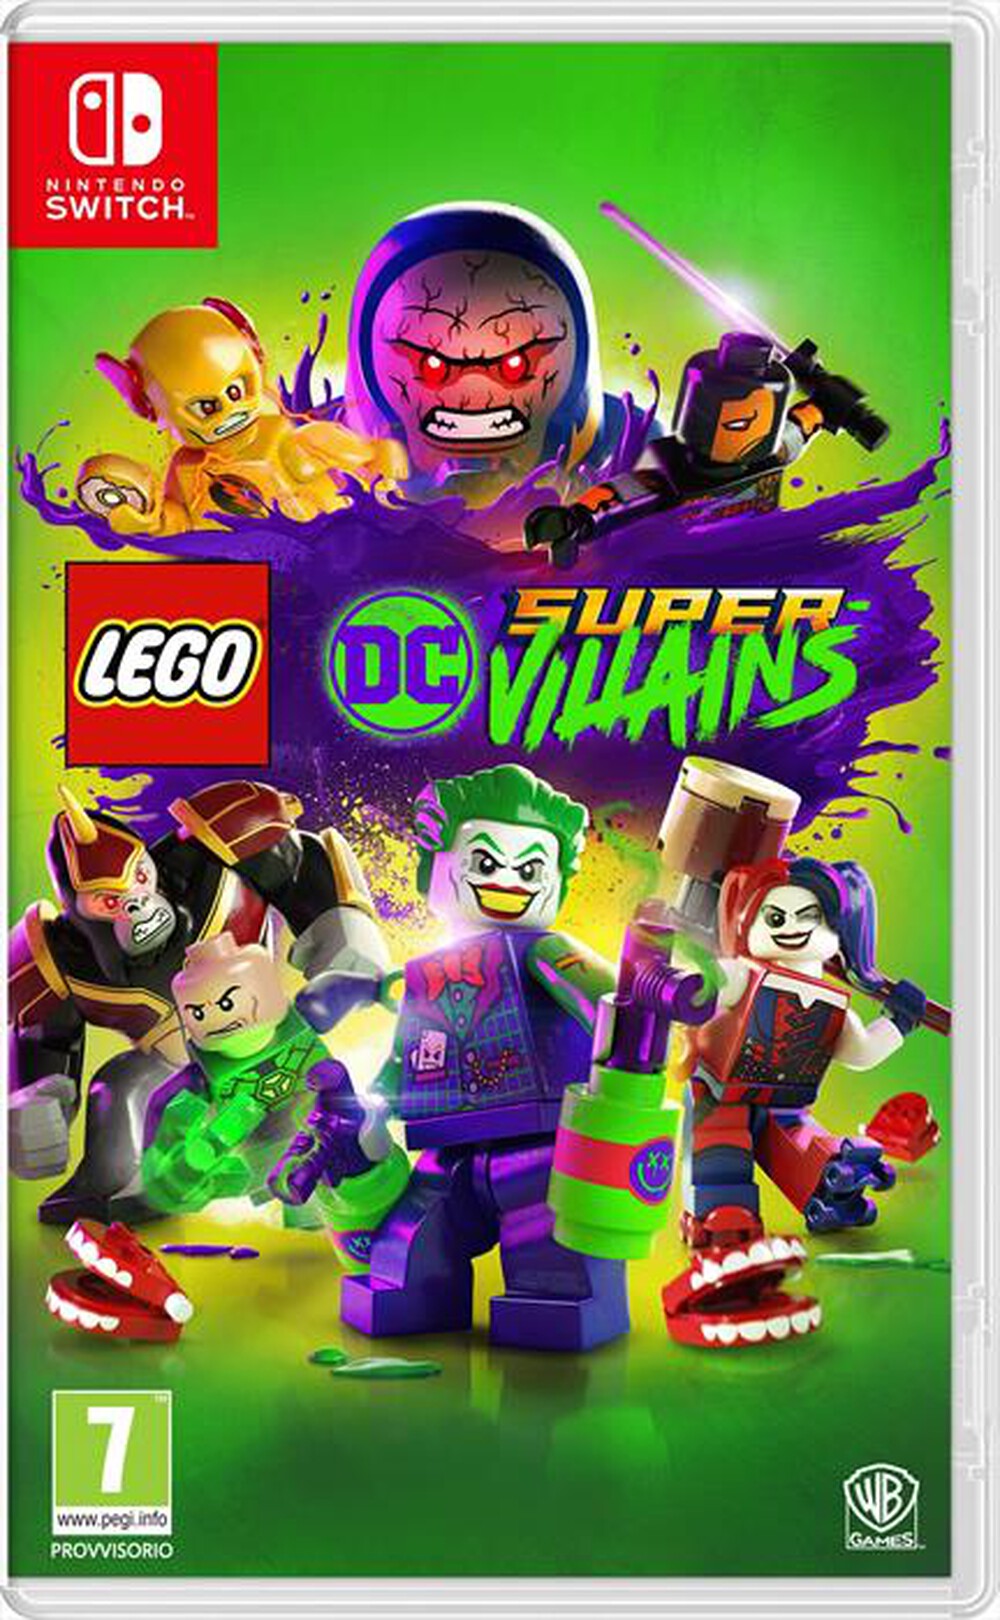 "WARNER GAMES - LEGO DC SUPER VILLAINS NS"